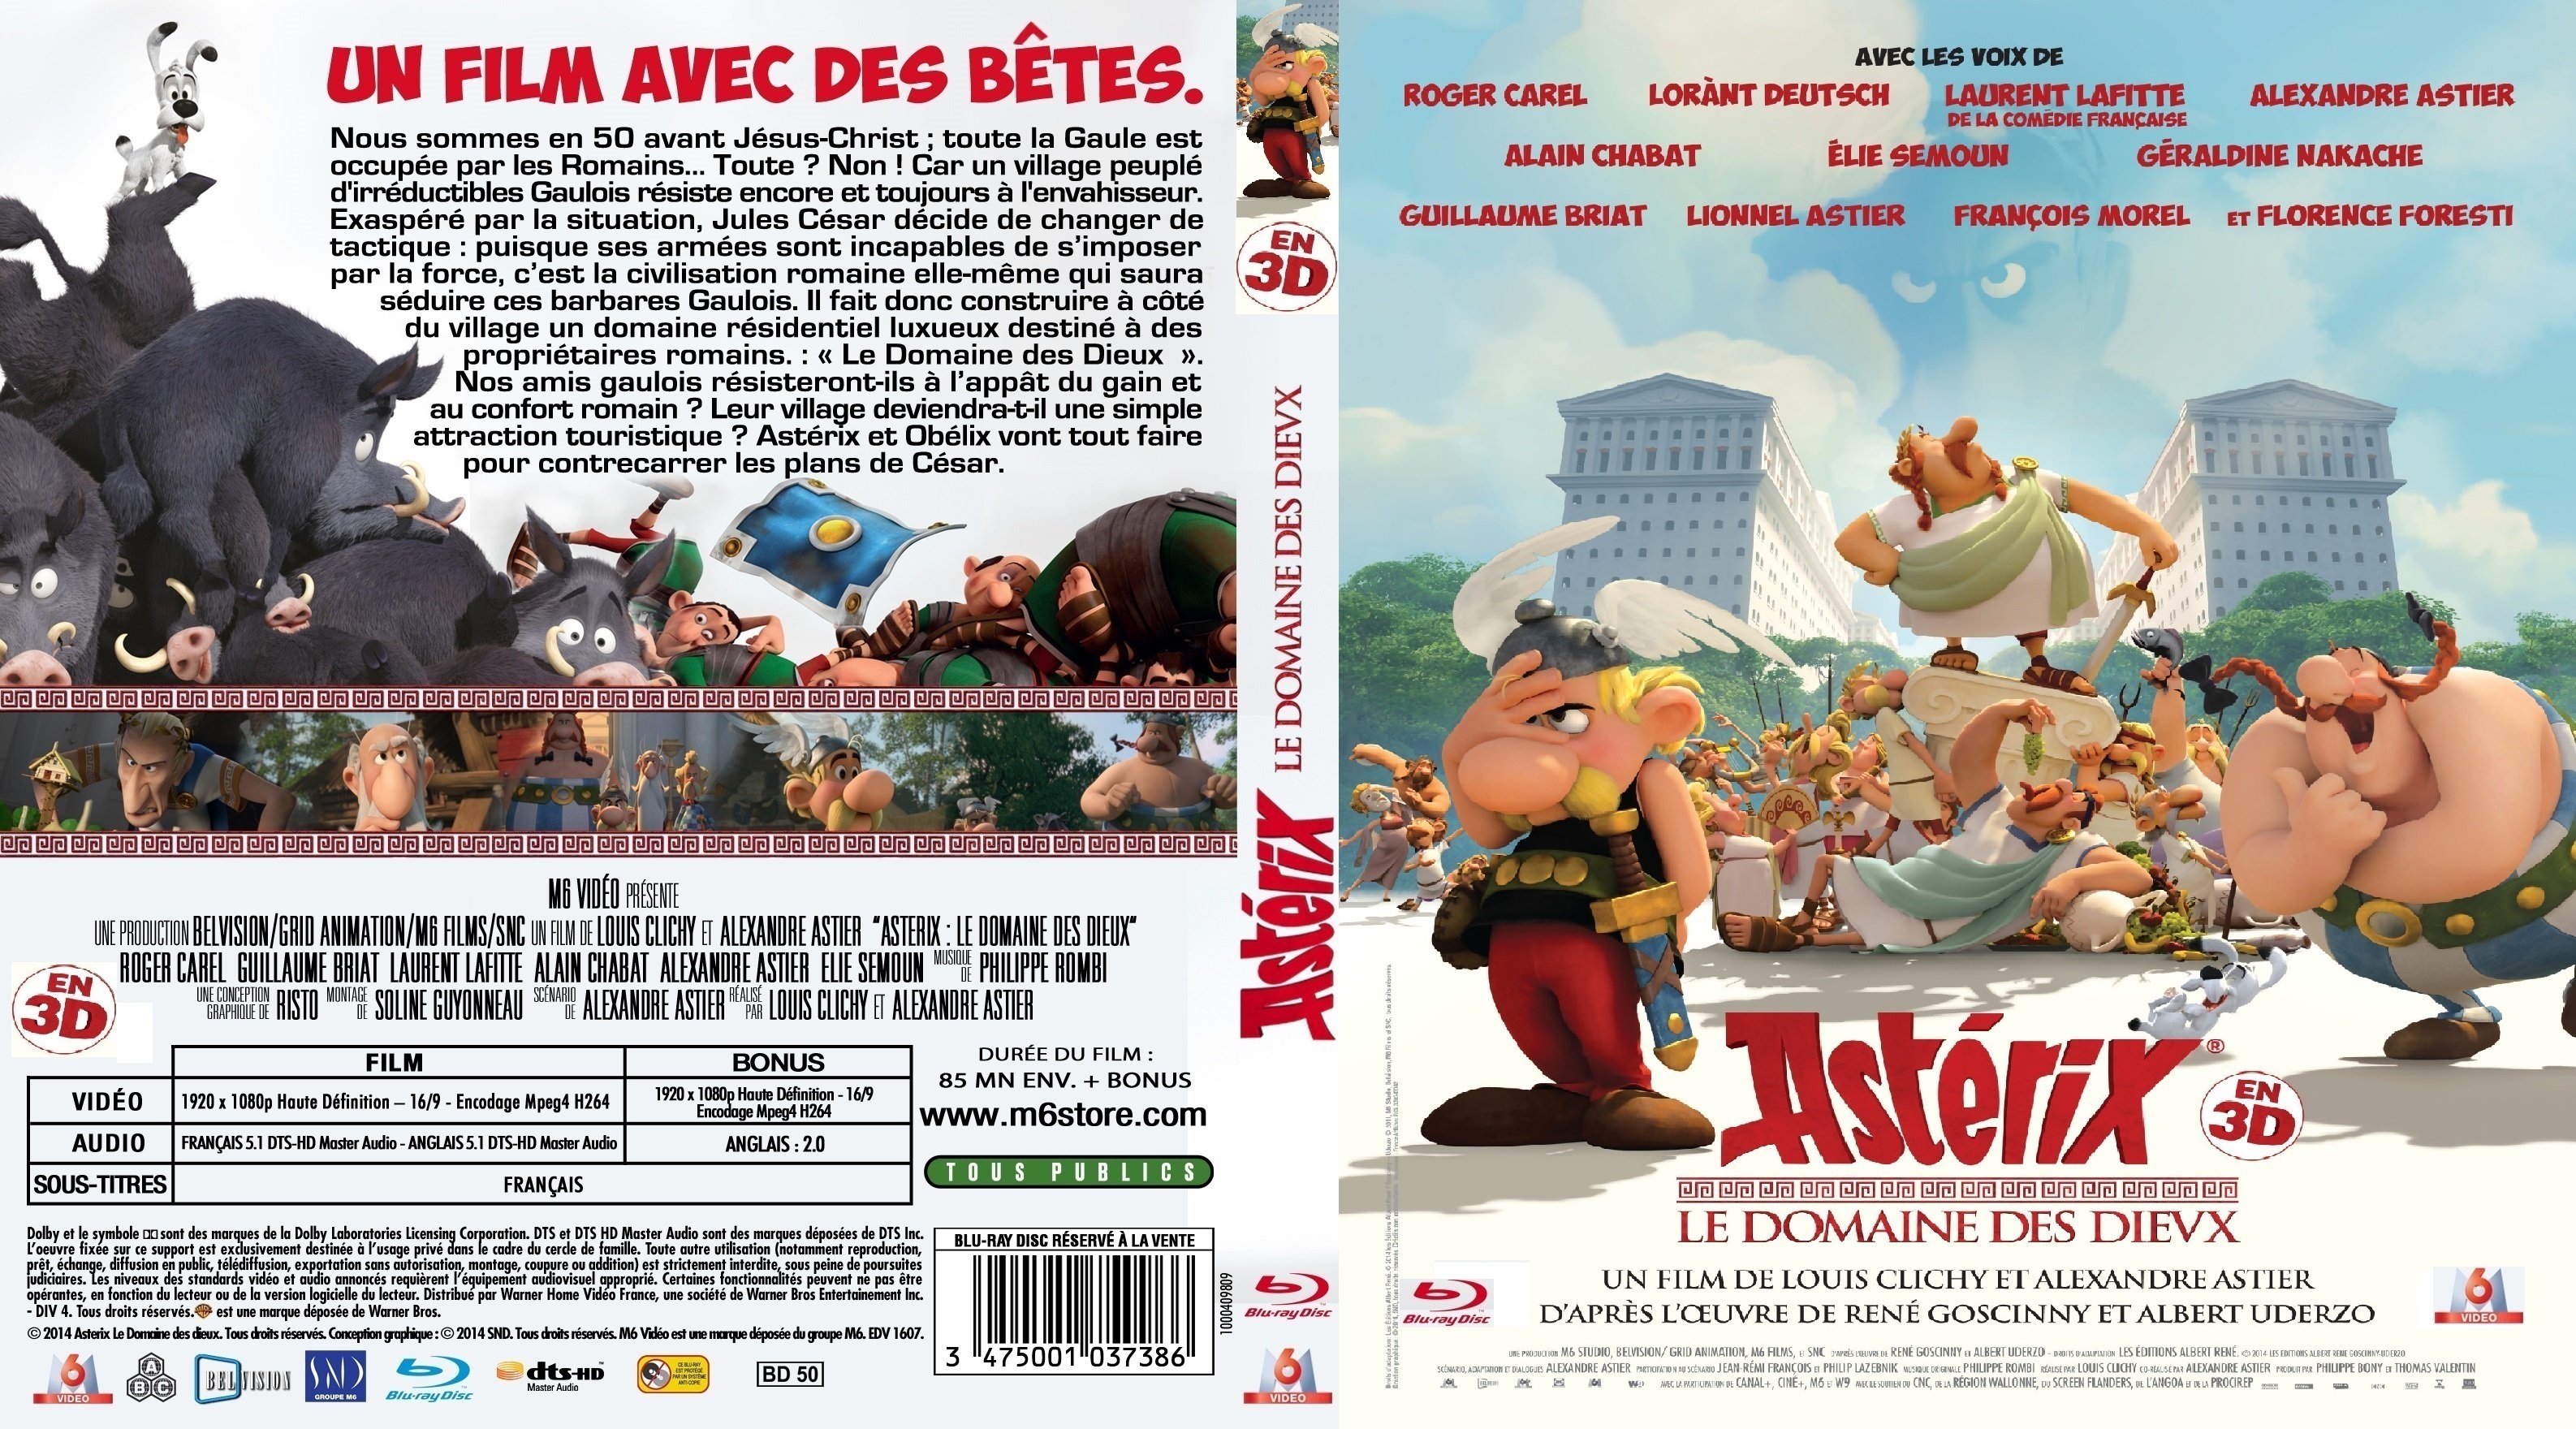 Jaquette DVD Astrix Le Domaine des Dieux 3D custom (BLU-RAY)